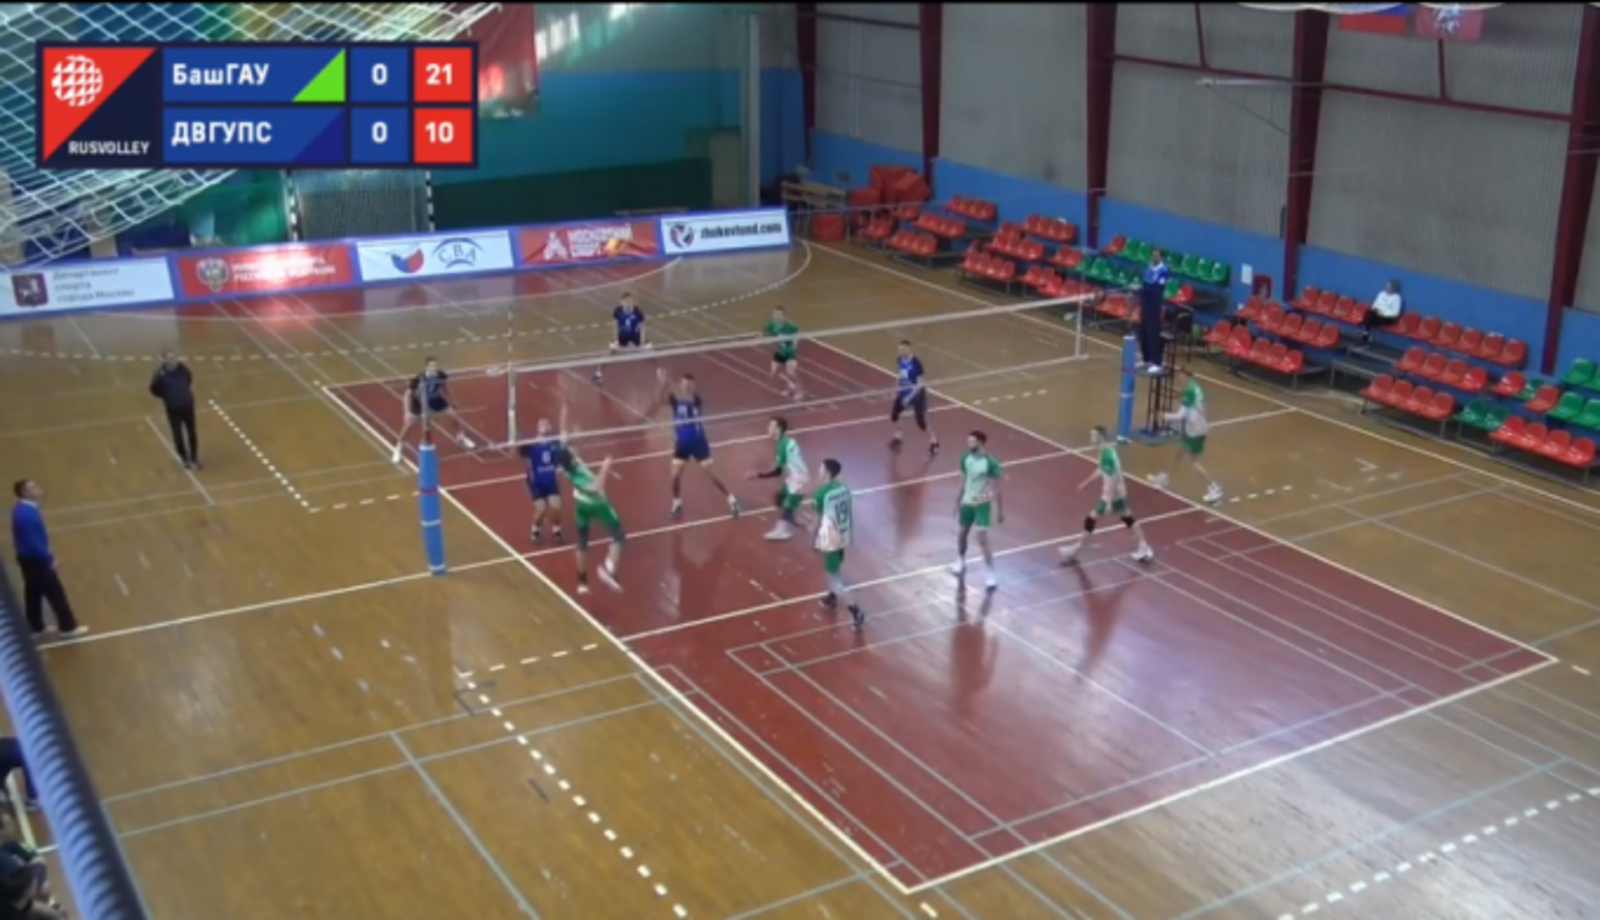 БашГАУ сохранил место в пятерке лучших студенческих волейбольных команд России